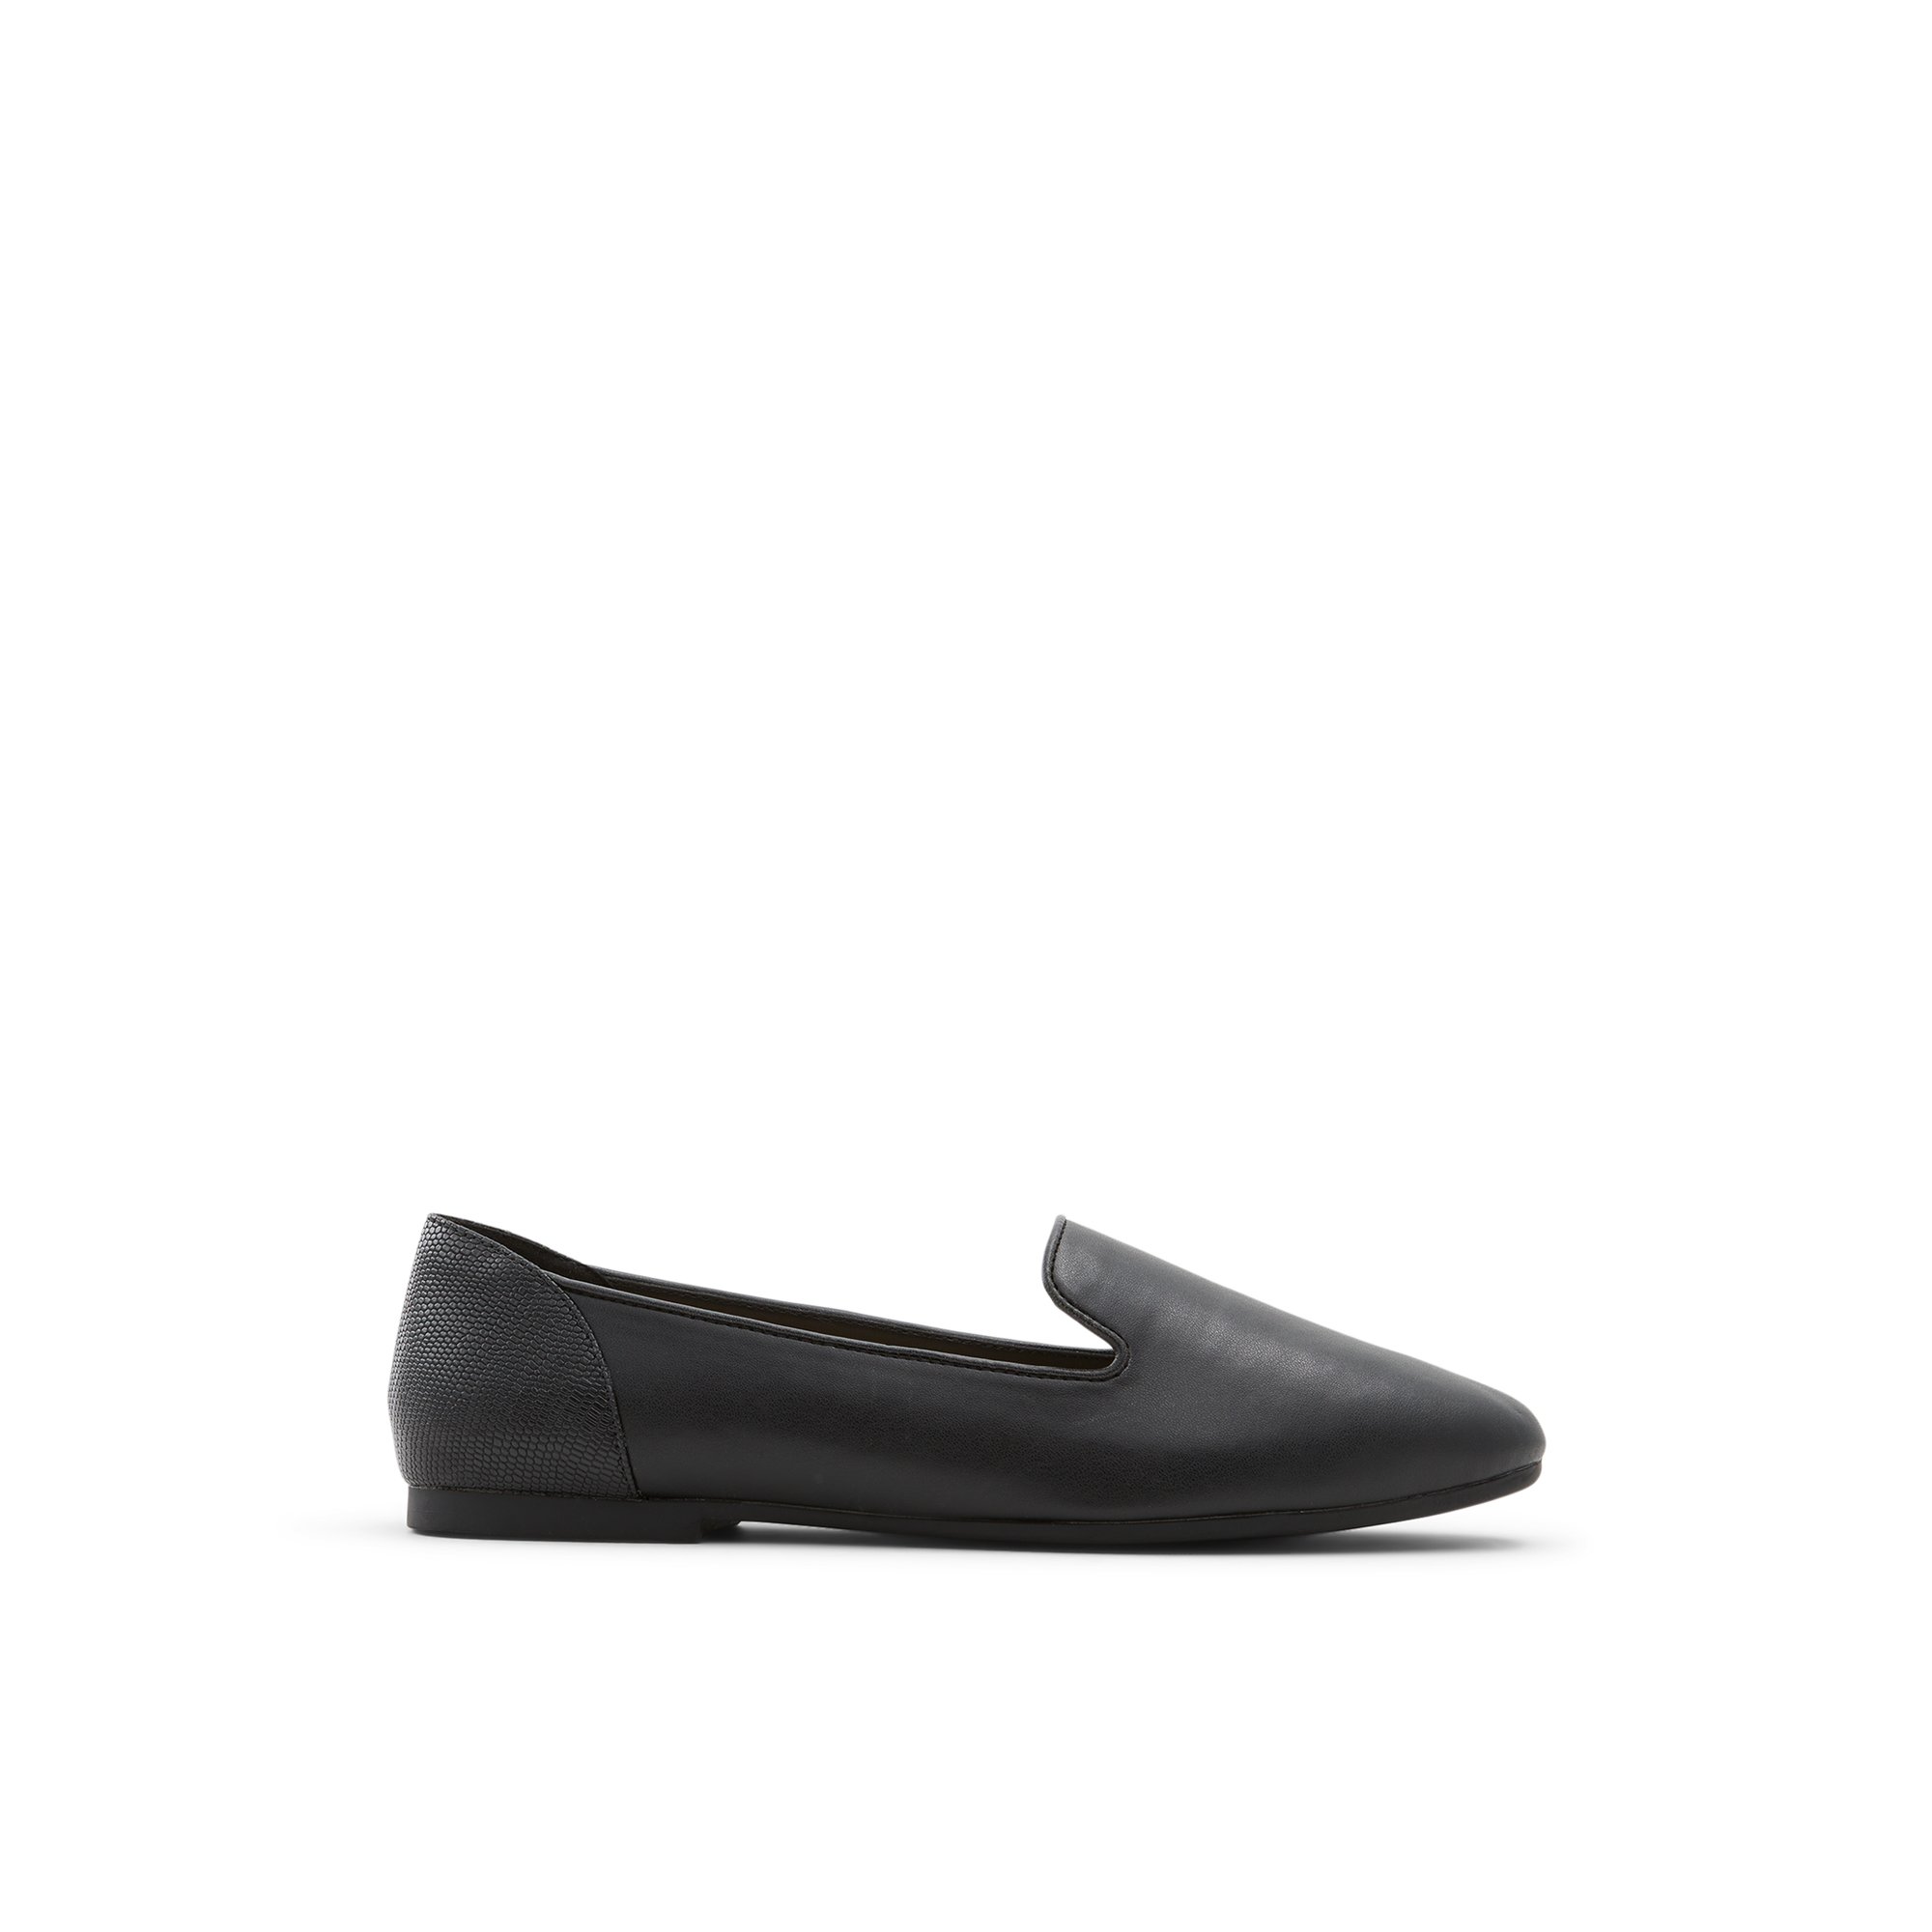 ALDO Mythimna - Women's Loafer - Black